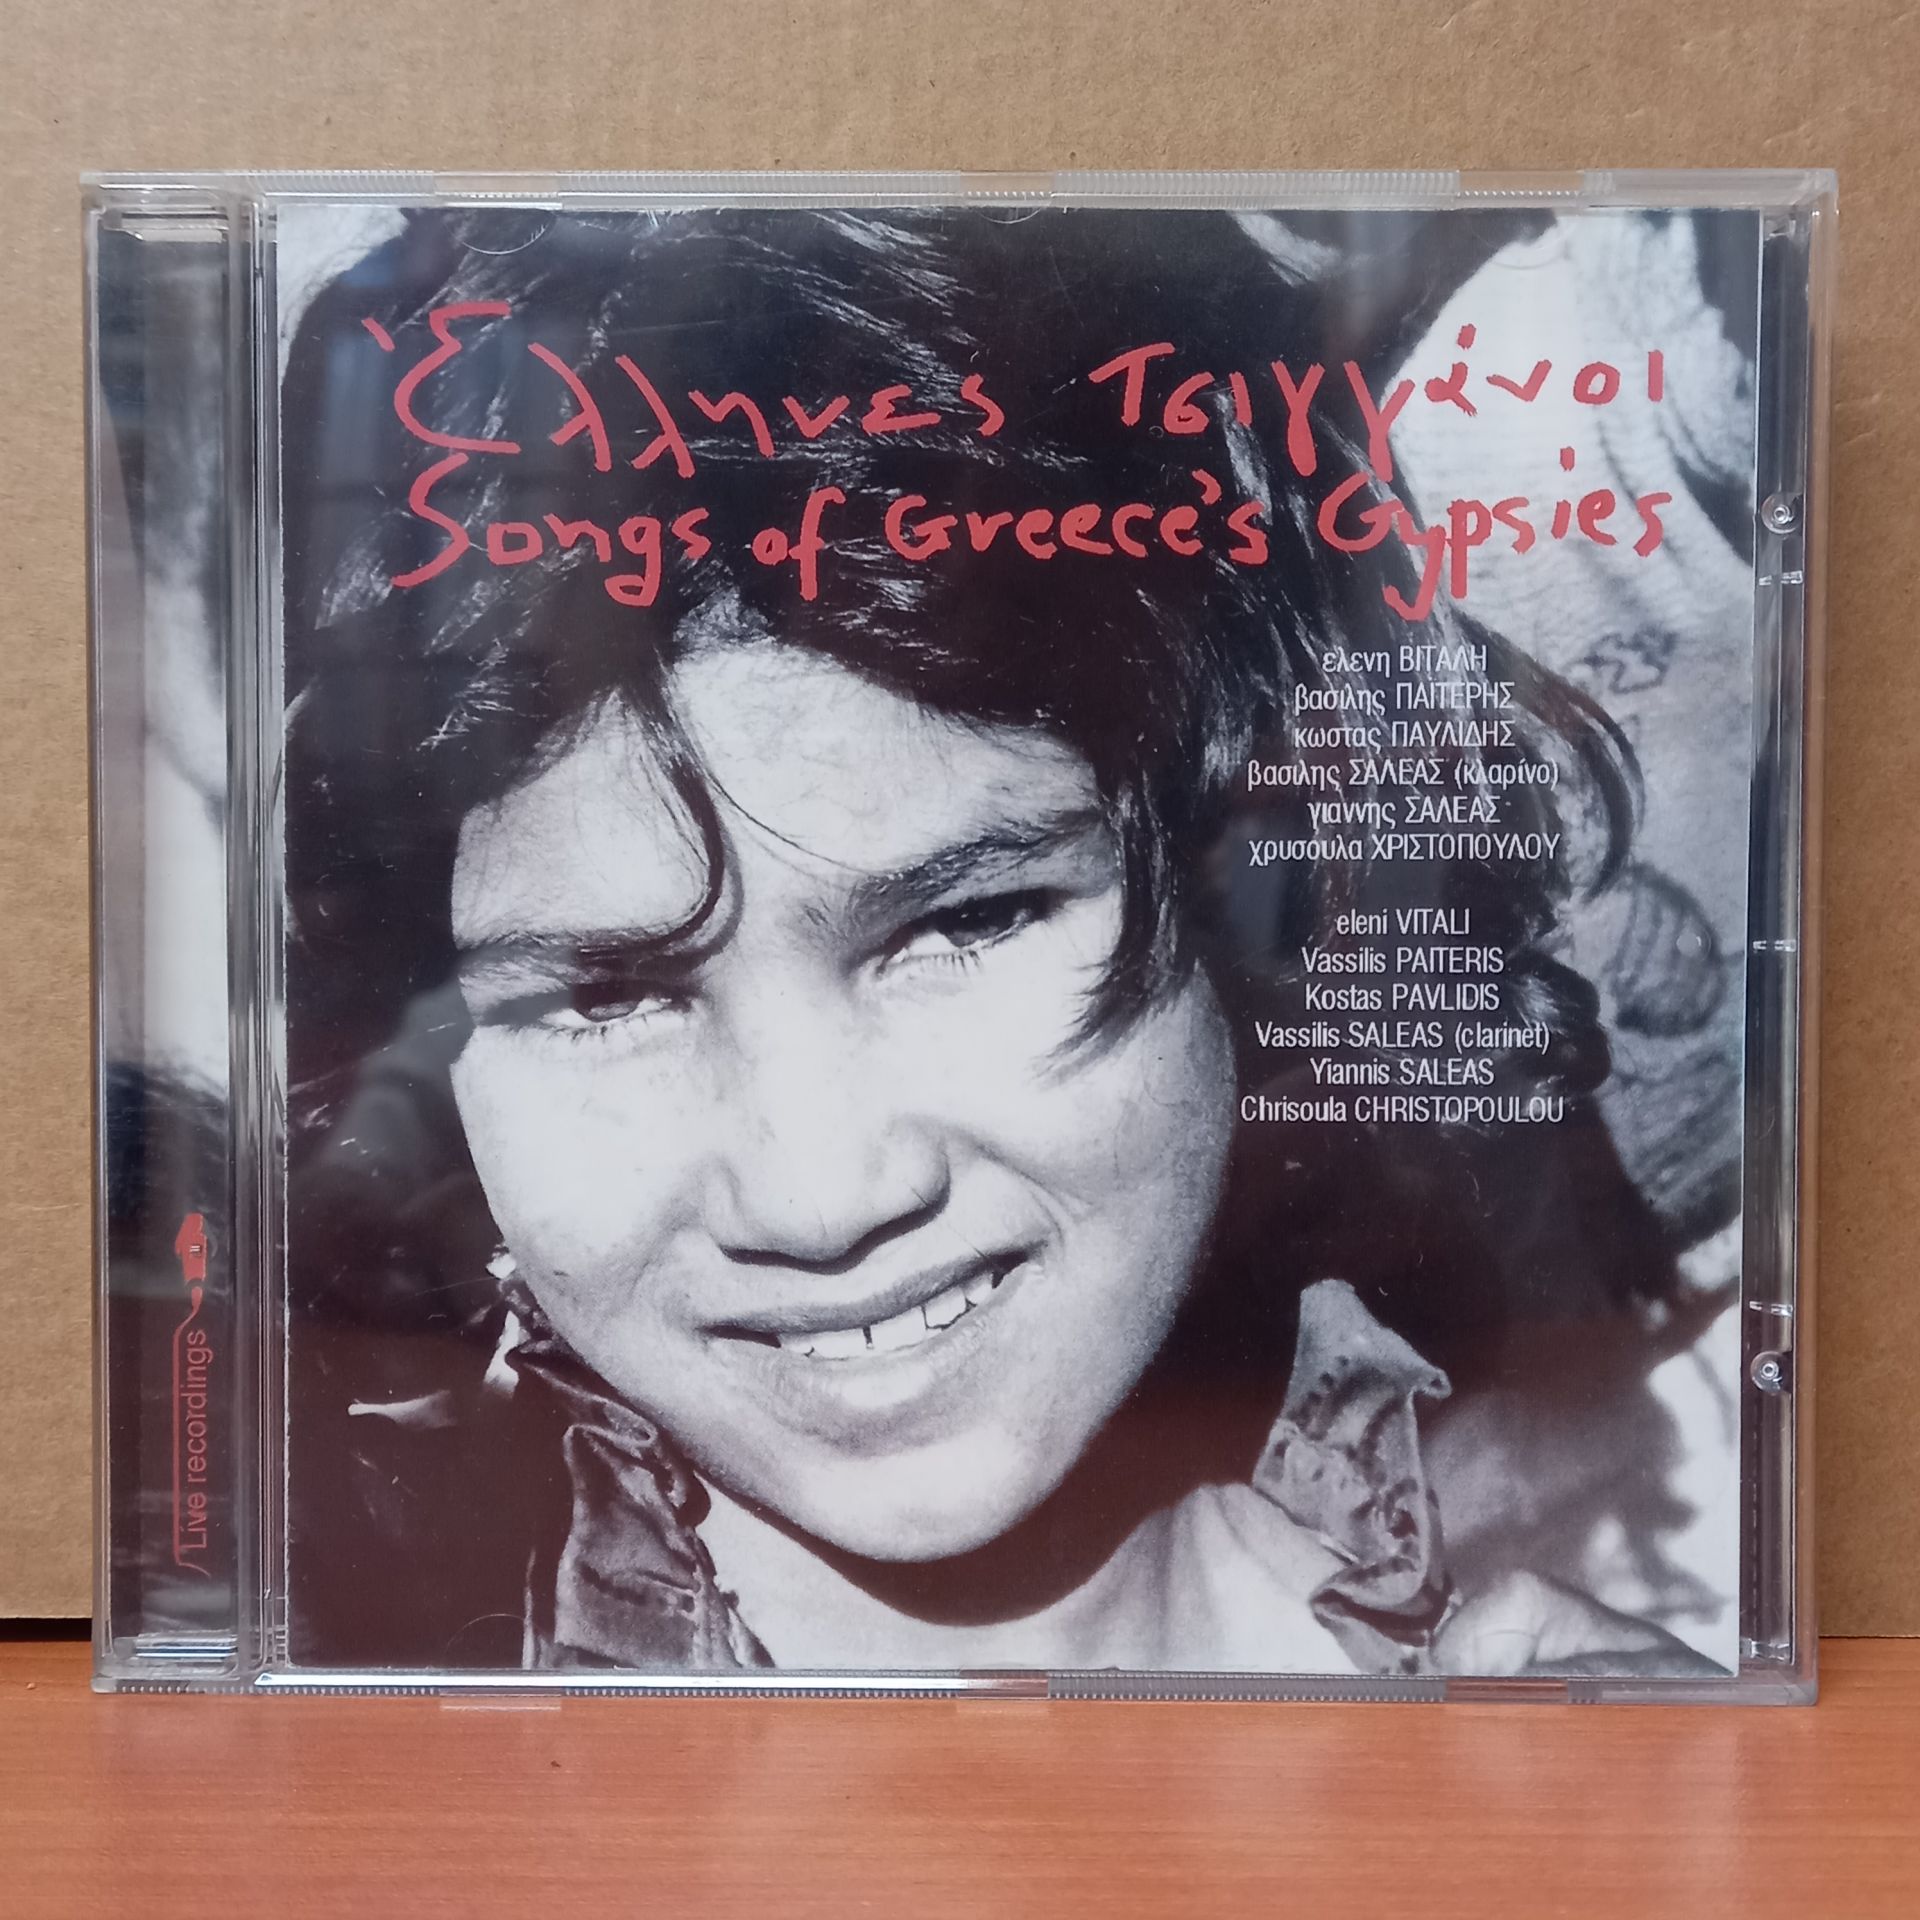 SONGS OF GREECE'S GYPSIES (1999) - CD 2.EL